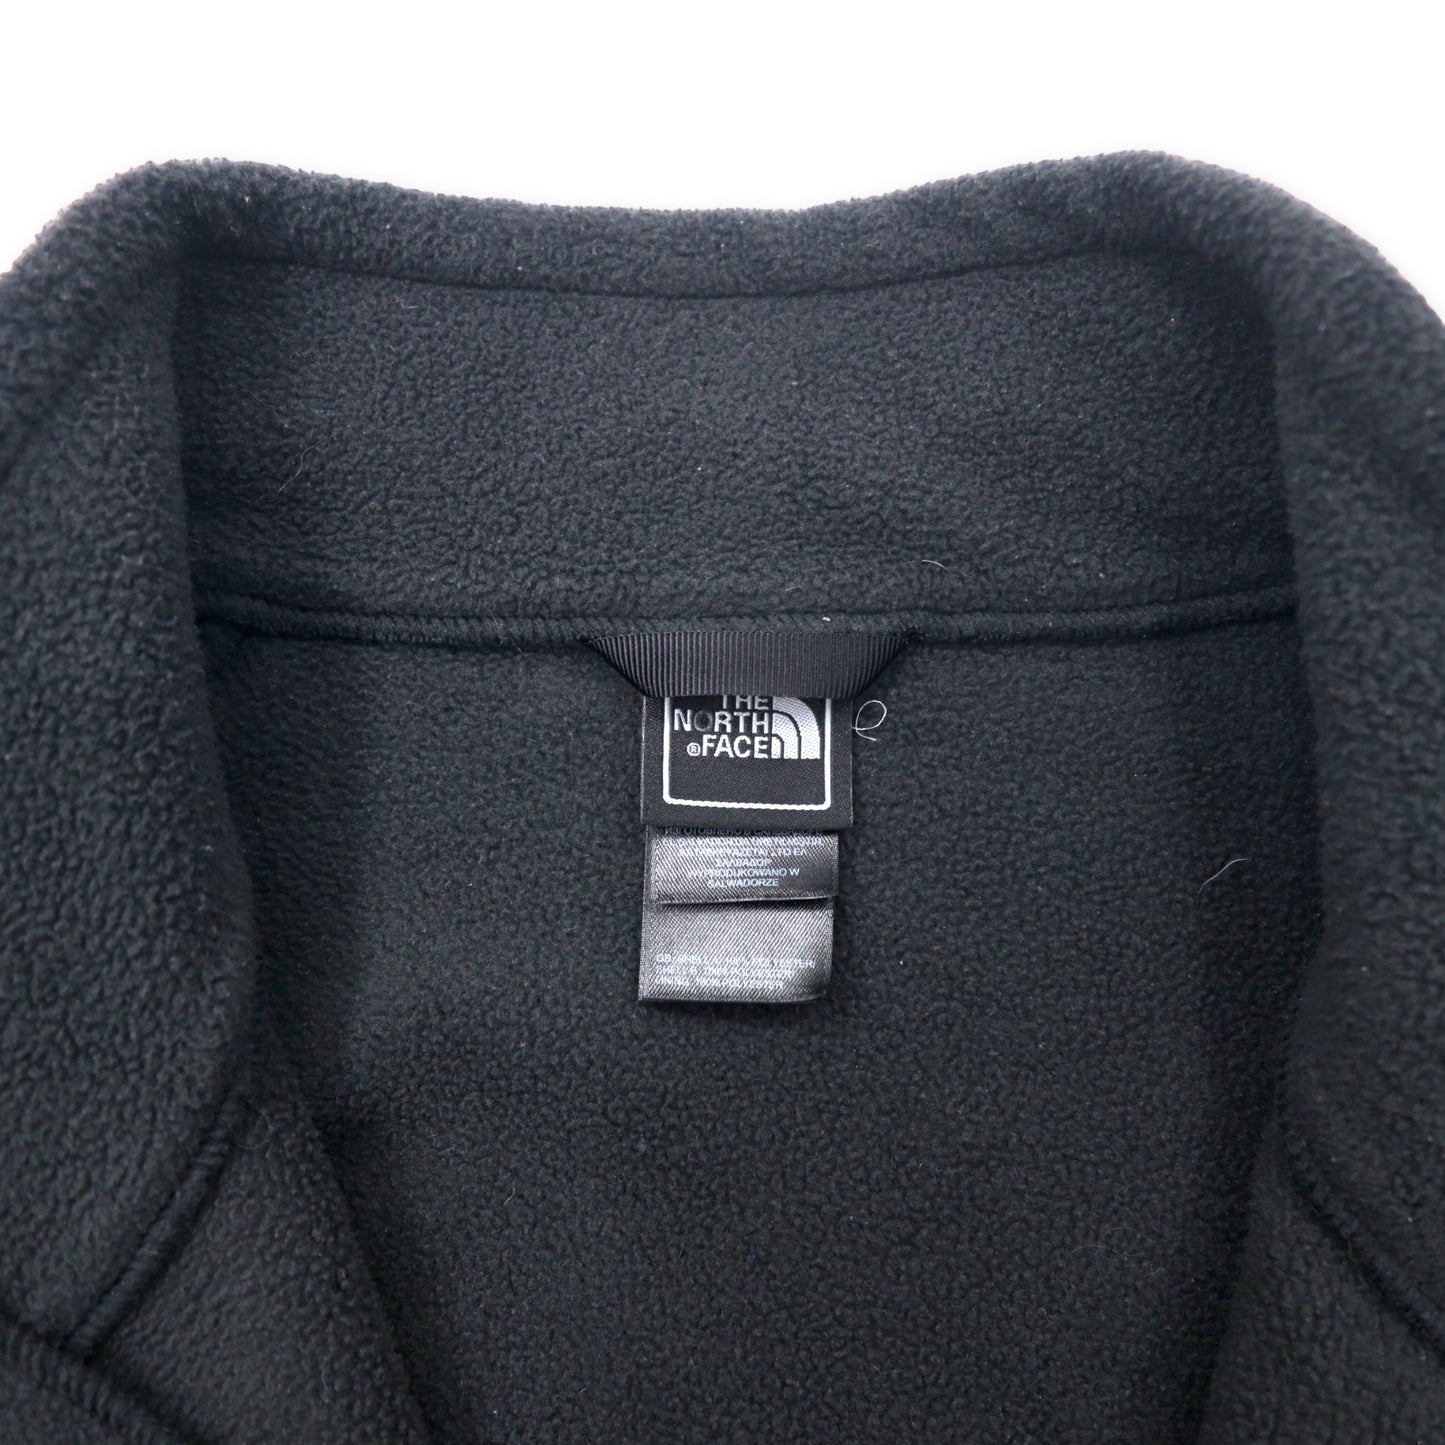 THE NORTH FACE フルジップ フリースジャケット XL ブラック ポリエステル ワンポイントロゴ刺繍 ビッグサイズ エルサルバドル製